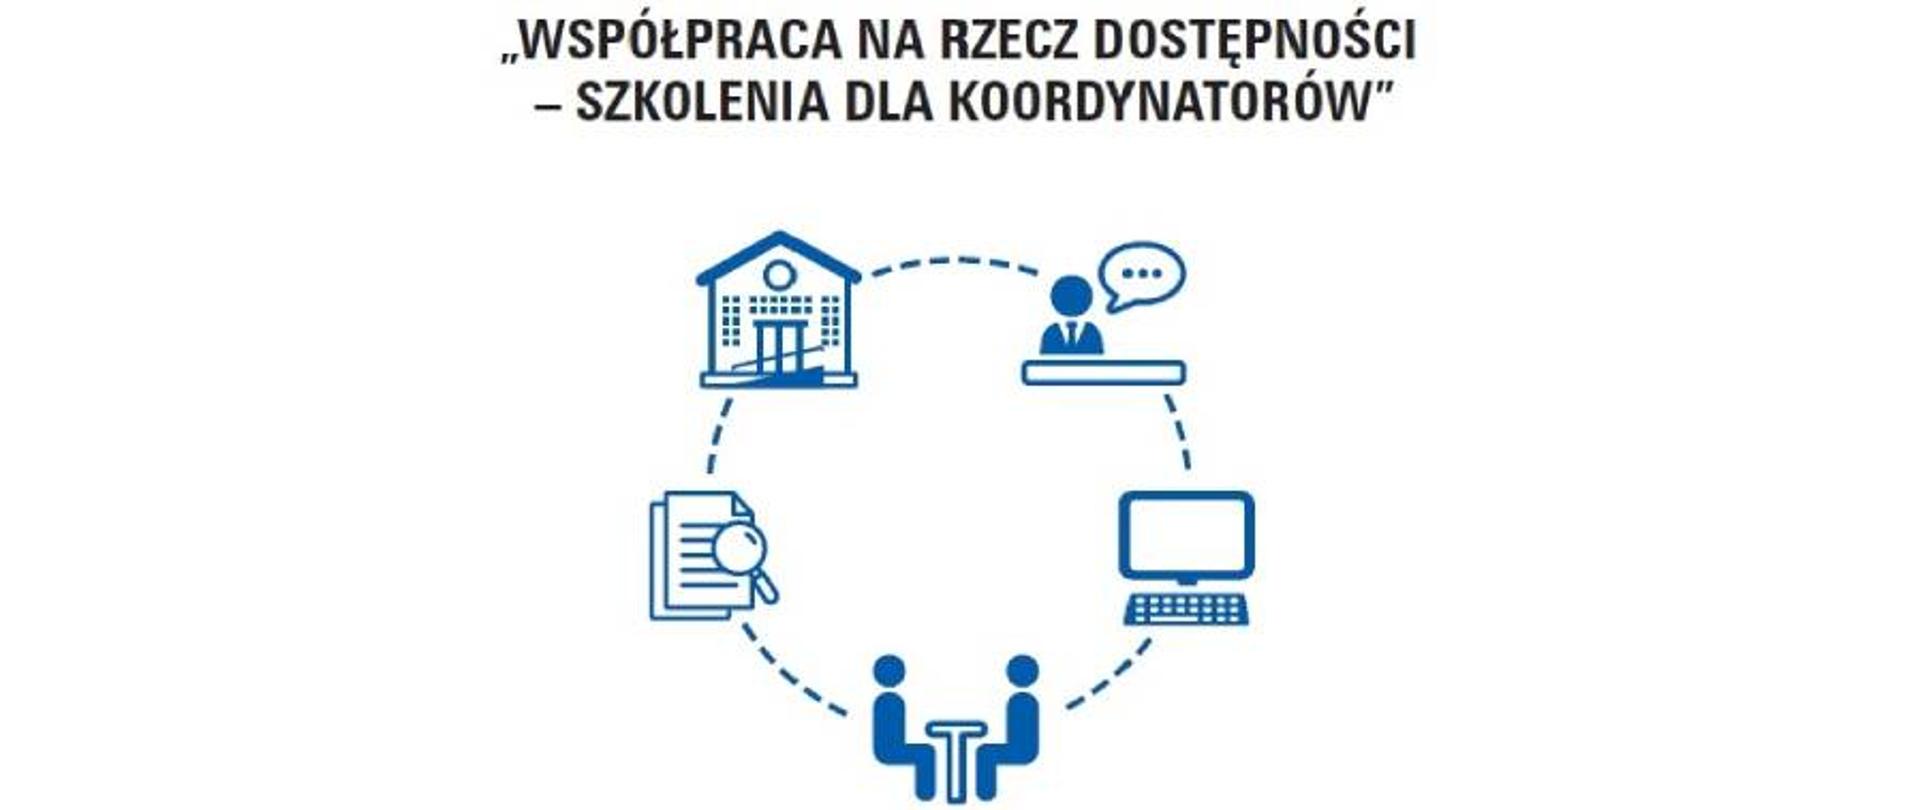 Na górze obrazka nazwa projektu "Współpraca na rzecz dostępności - szkolenia dla koordynatorów". Pod nim logo projektu. Proste grafiki wektorowe w okręgu.